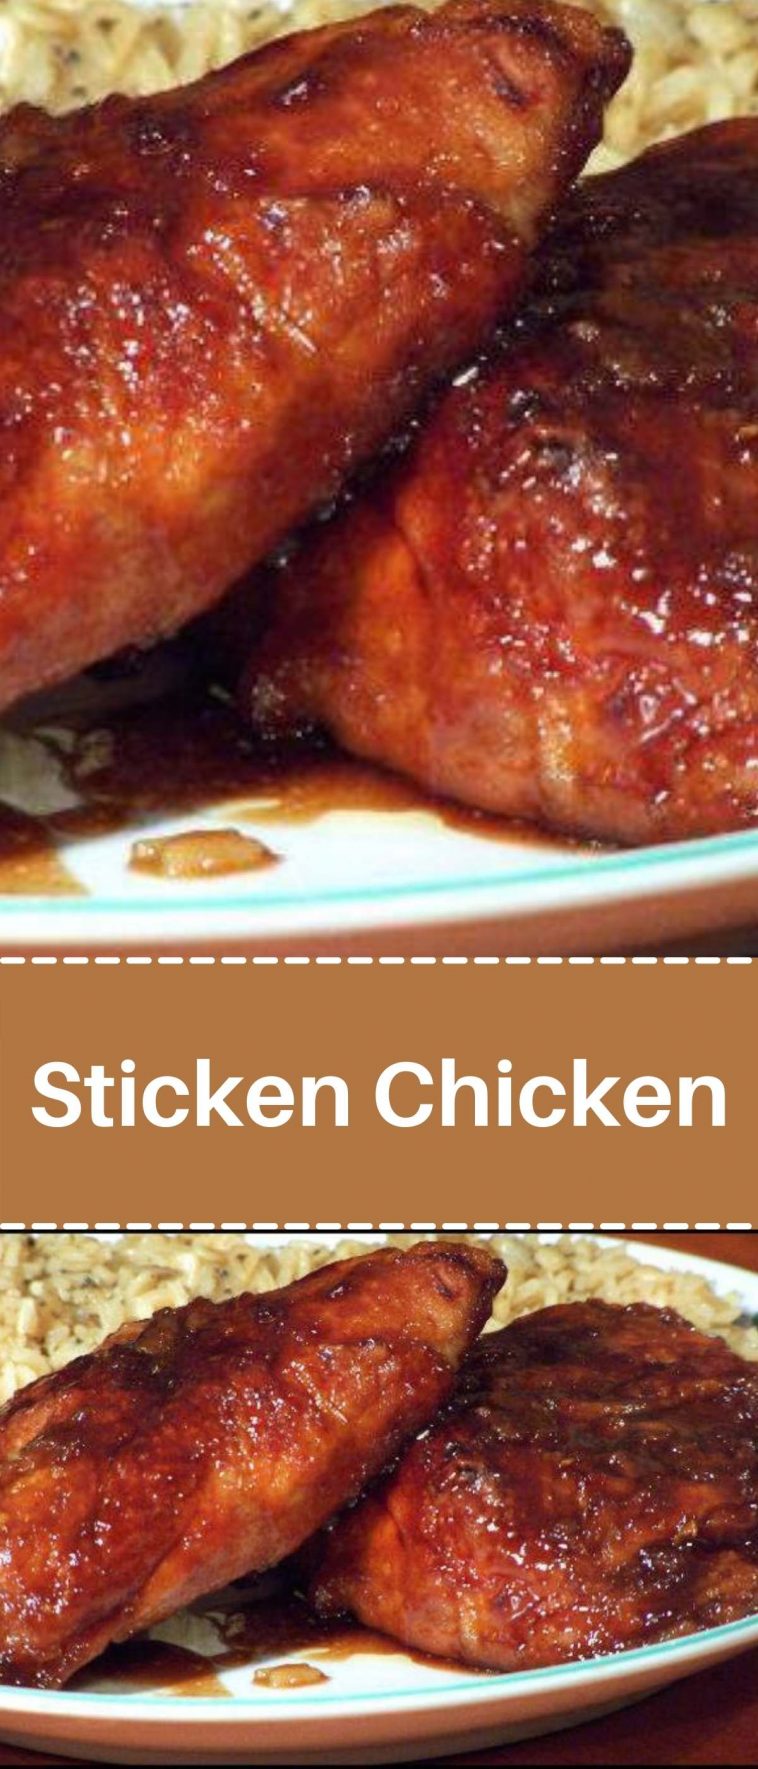 Sticken Chicken